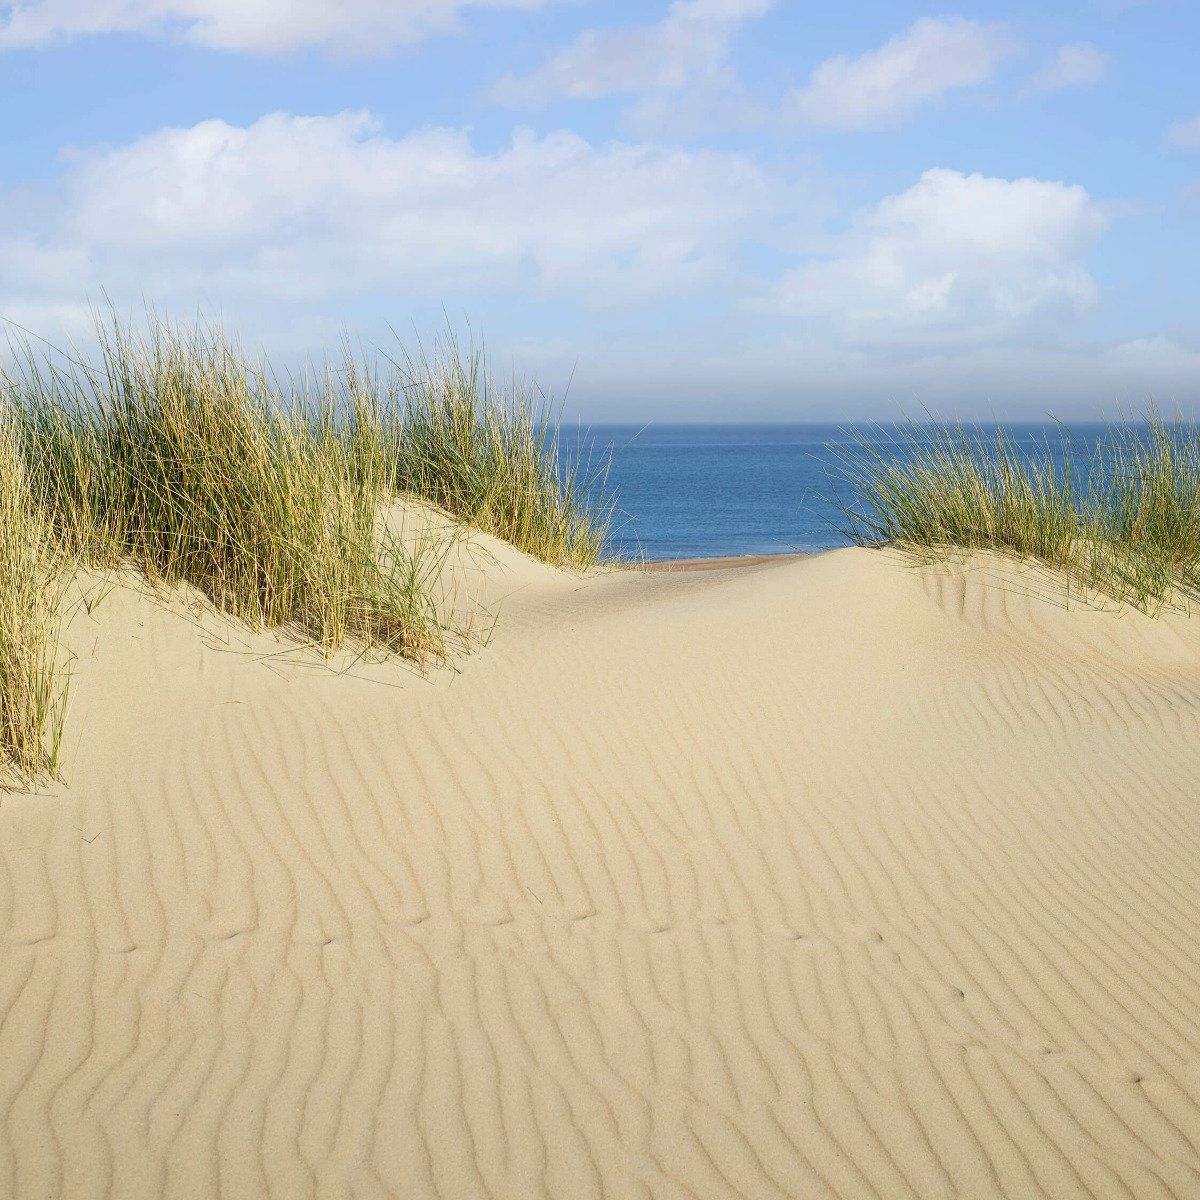 Dune passage to the beach